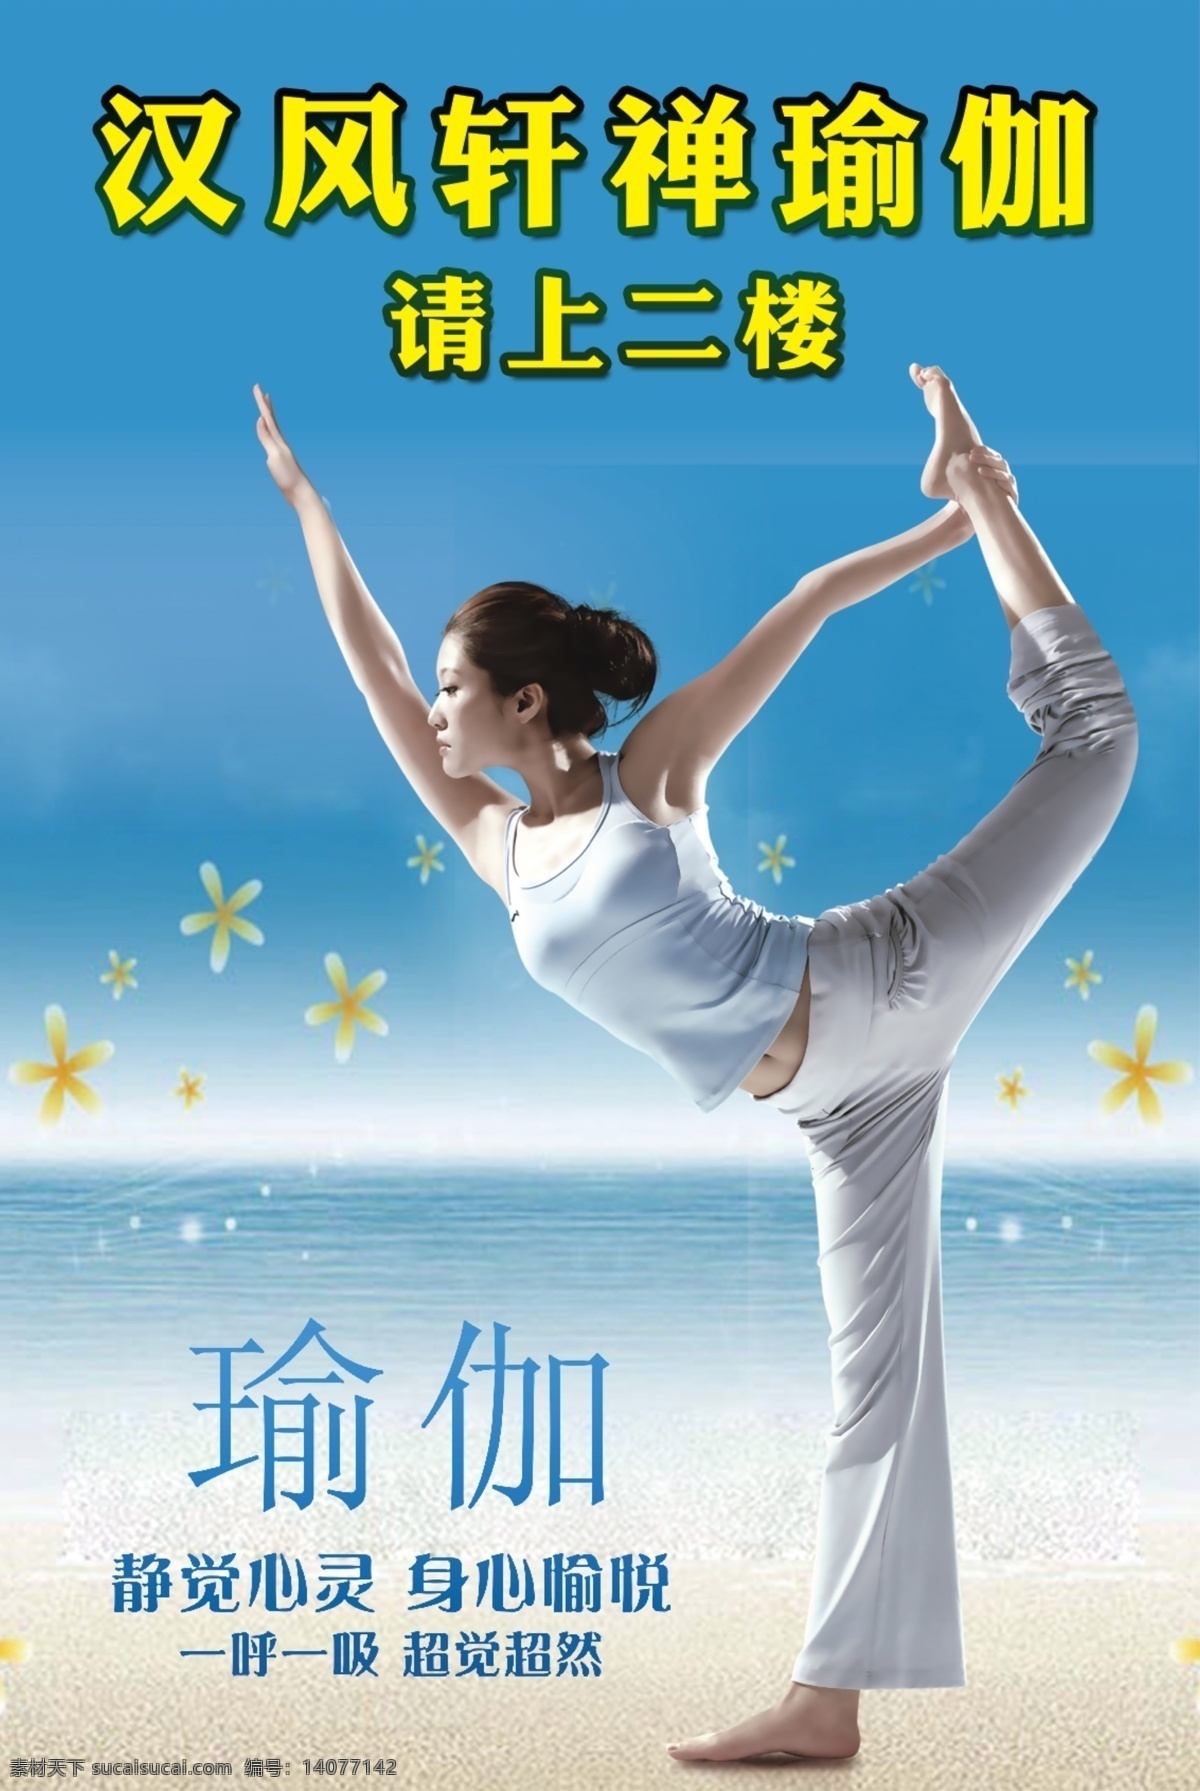 广告设计模板 海边 女人 瑜伽 瑜伽海报 源文件 海报 模板下载 练瑜伽的女人 海蓝 psd源文件